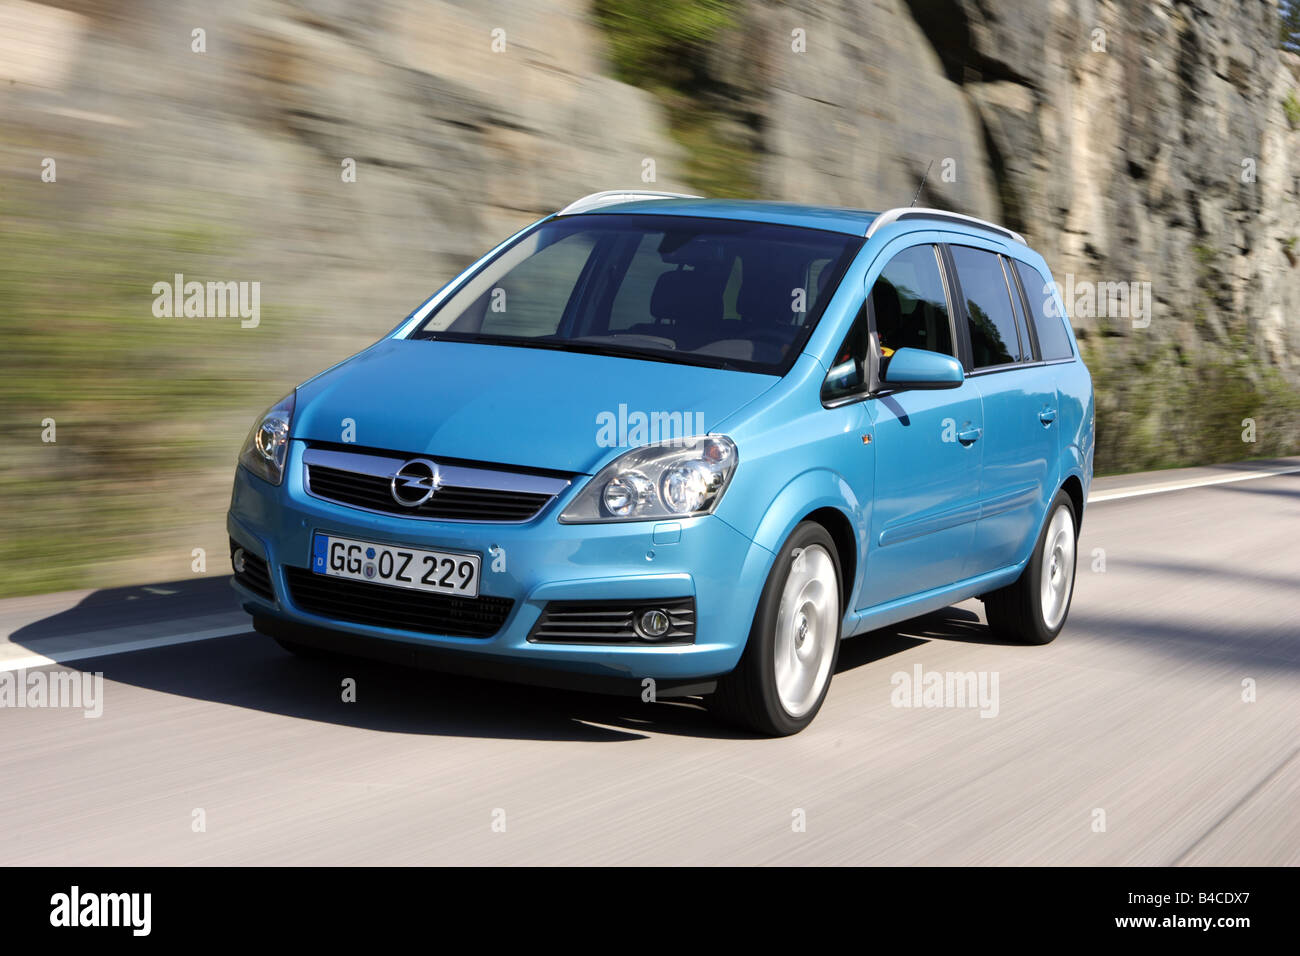 Goed gevoel moeilijk handboeien Opel zafira 2 0 turbo hi-res stock photography and images - Alamy